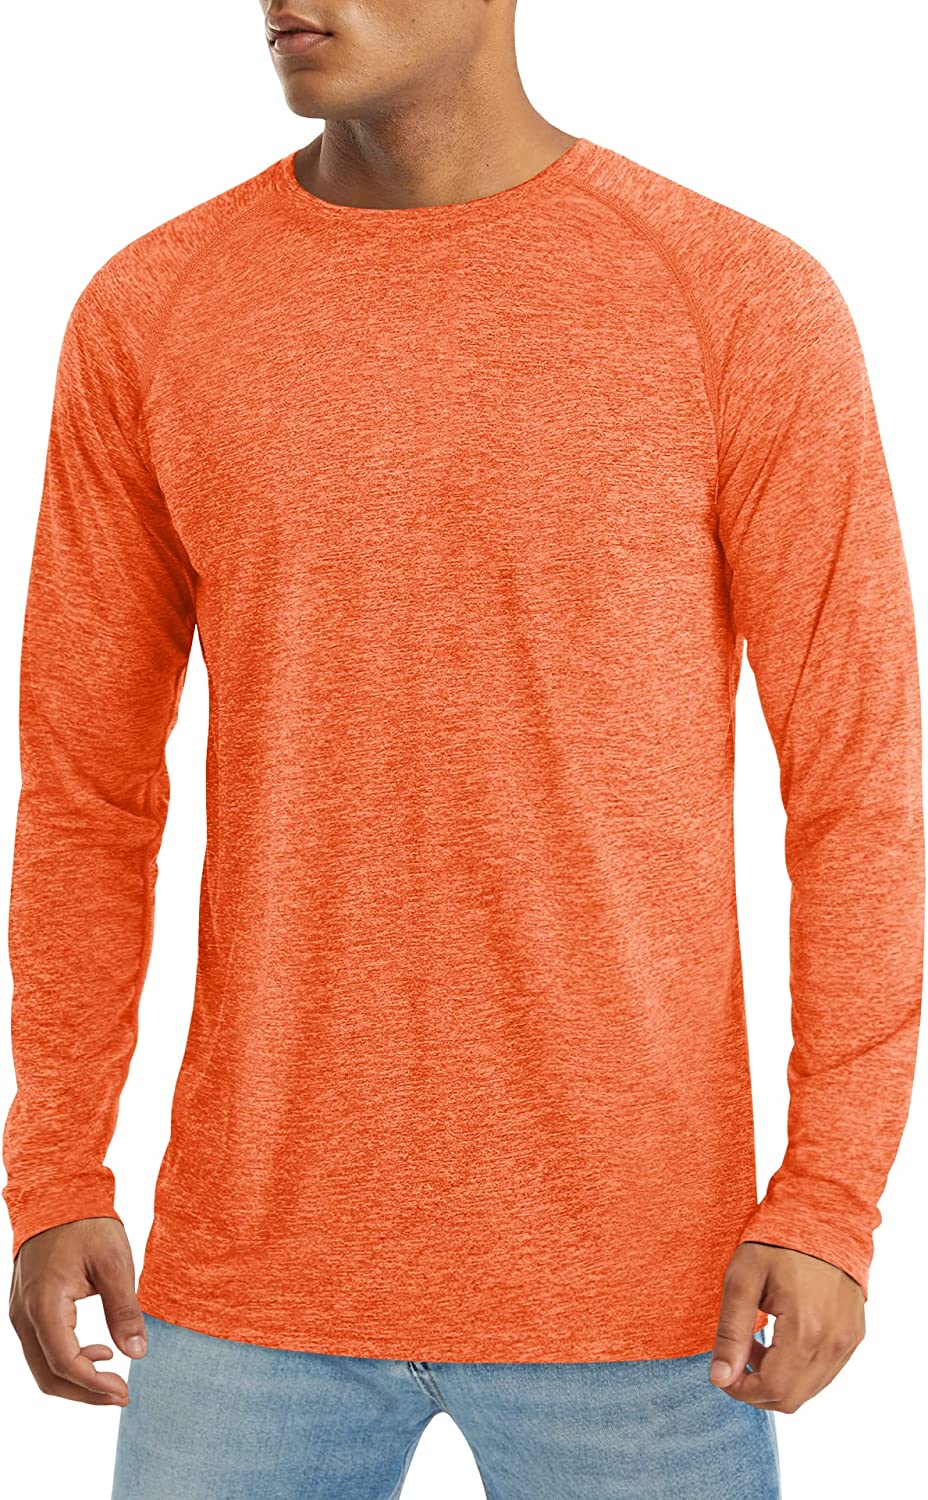 MAGCOMSEN Men's Long Sleeve Shirt UPF 50+ Sun Protection T-Shirt  Lightweight Qui